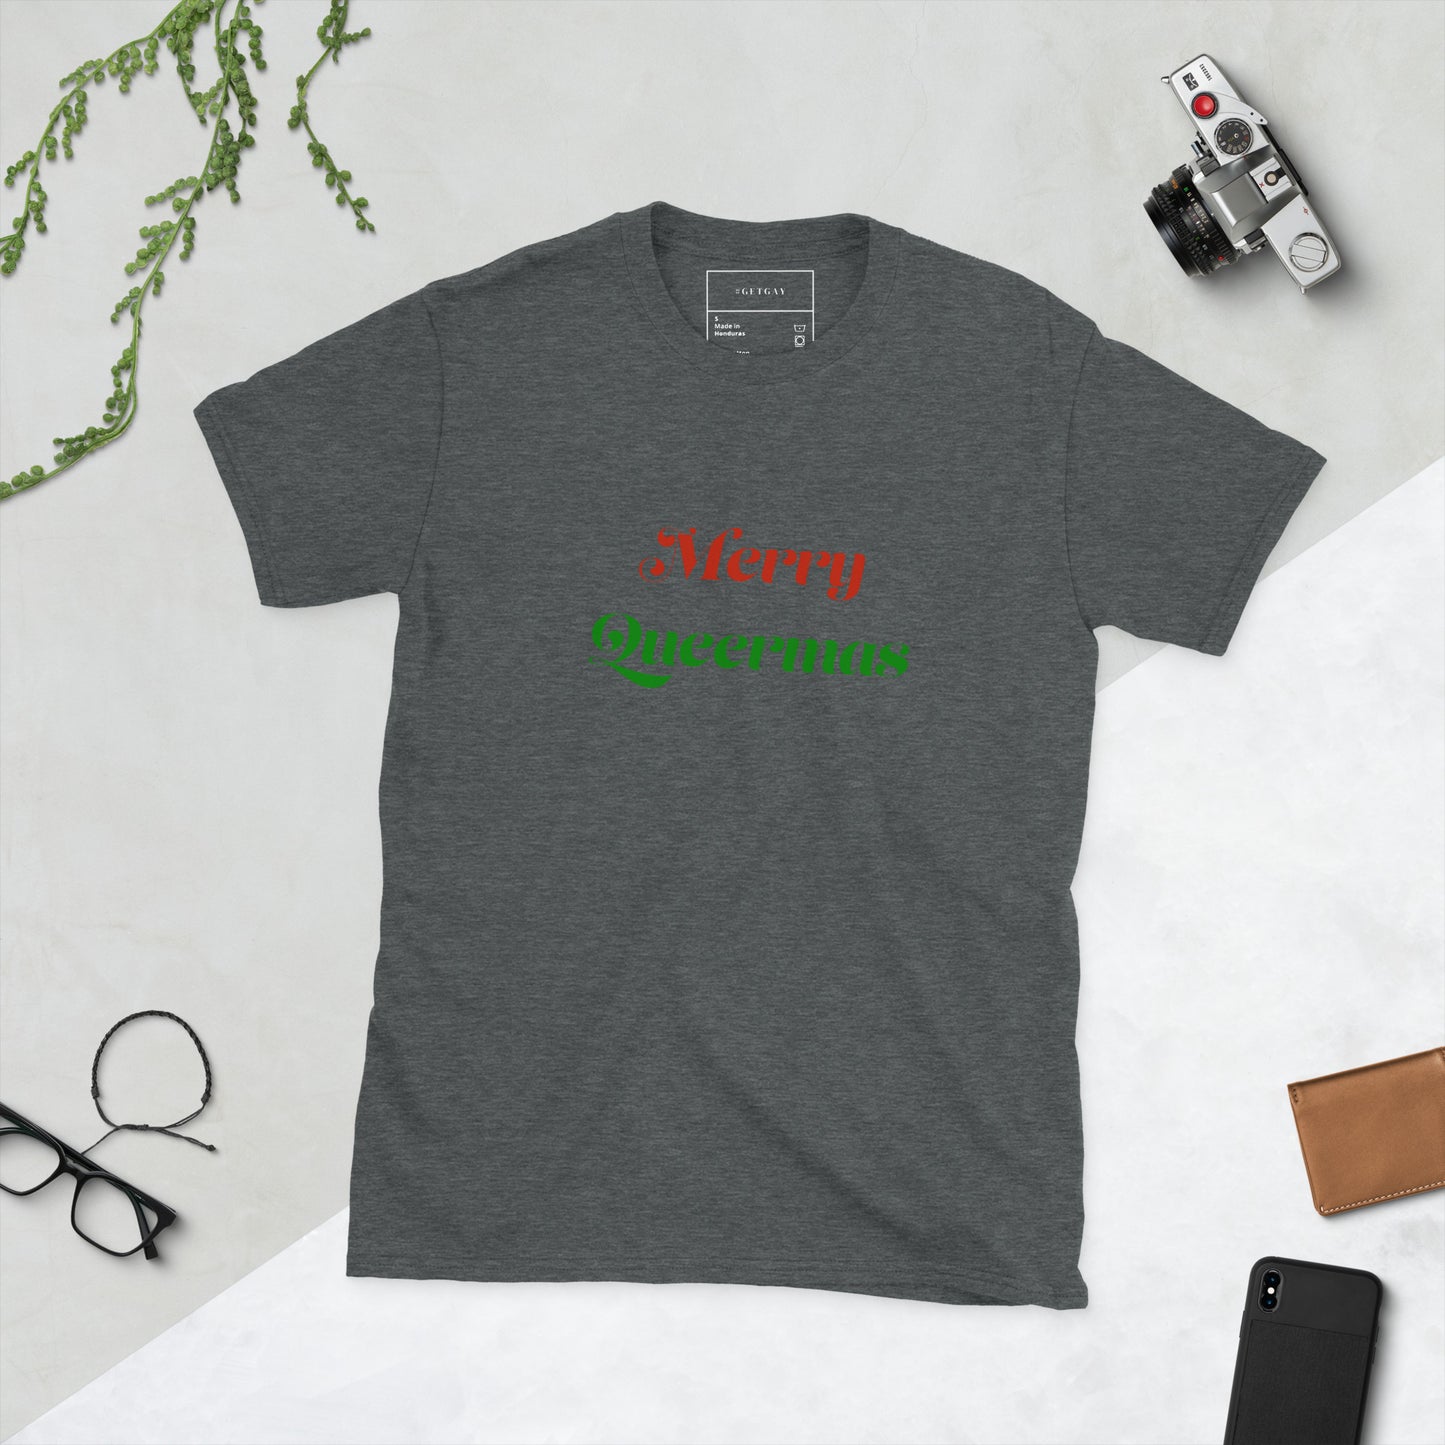 Merry Queermas T-shirt